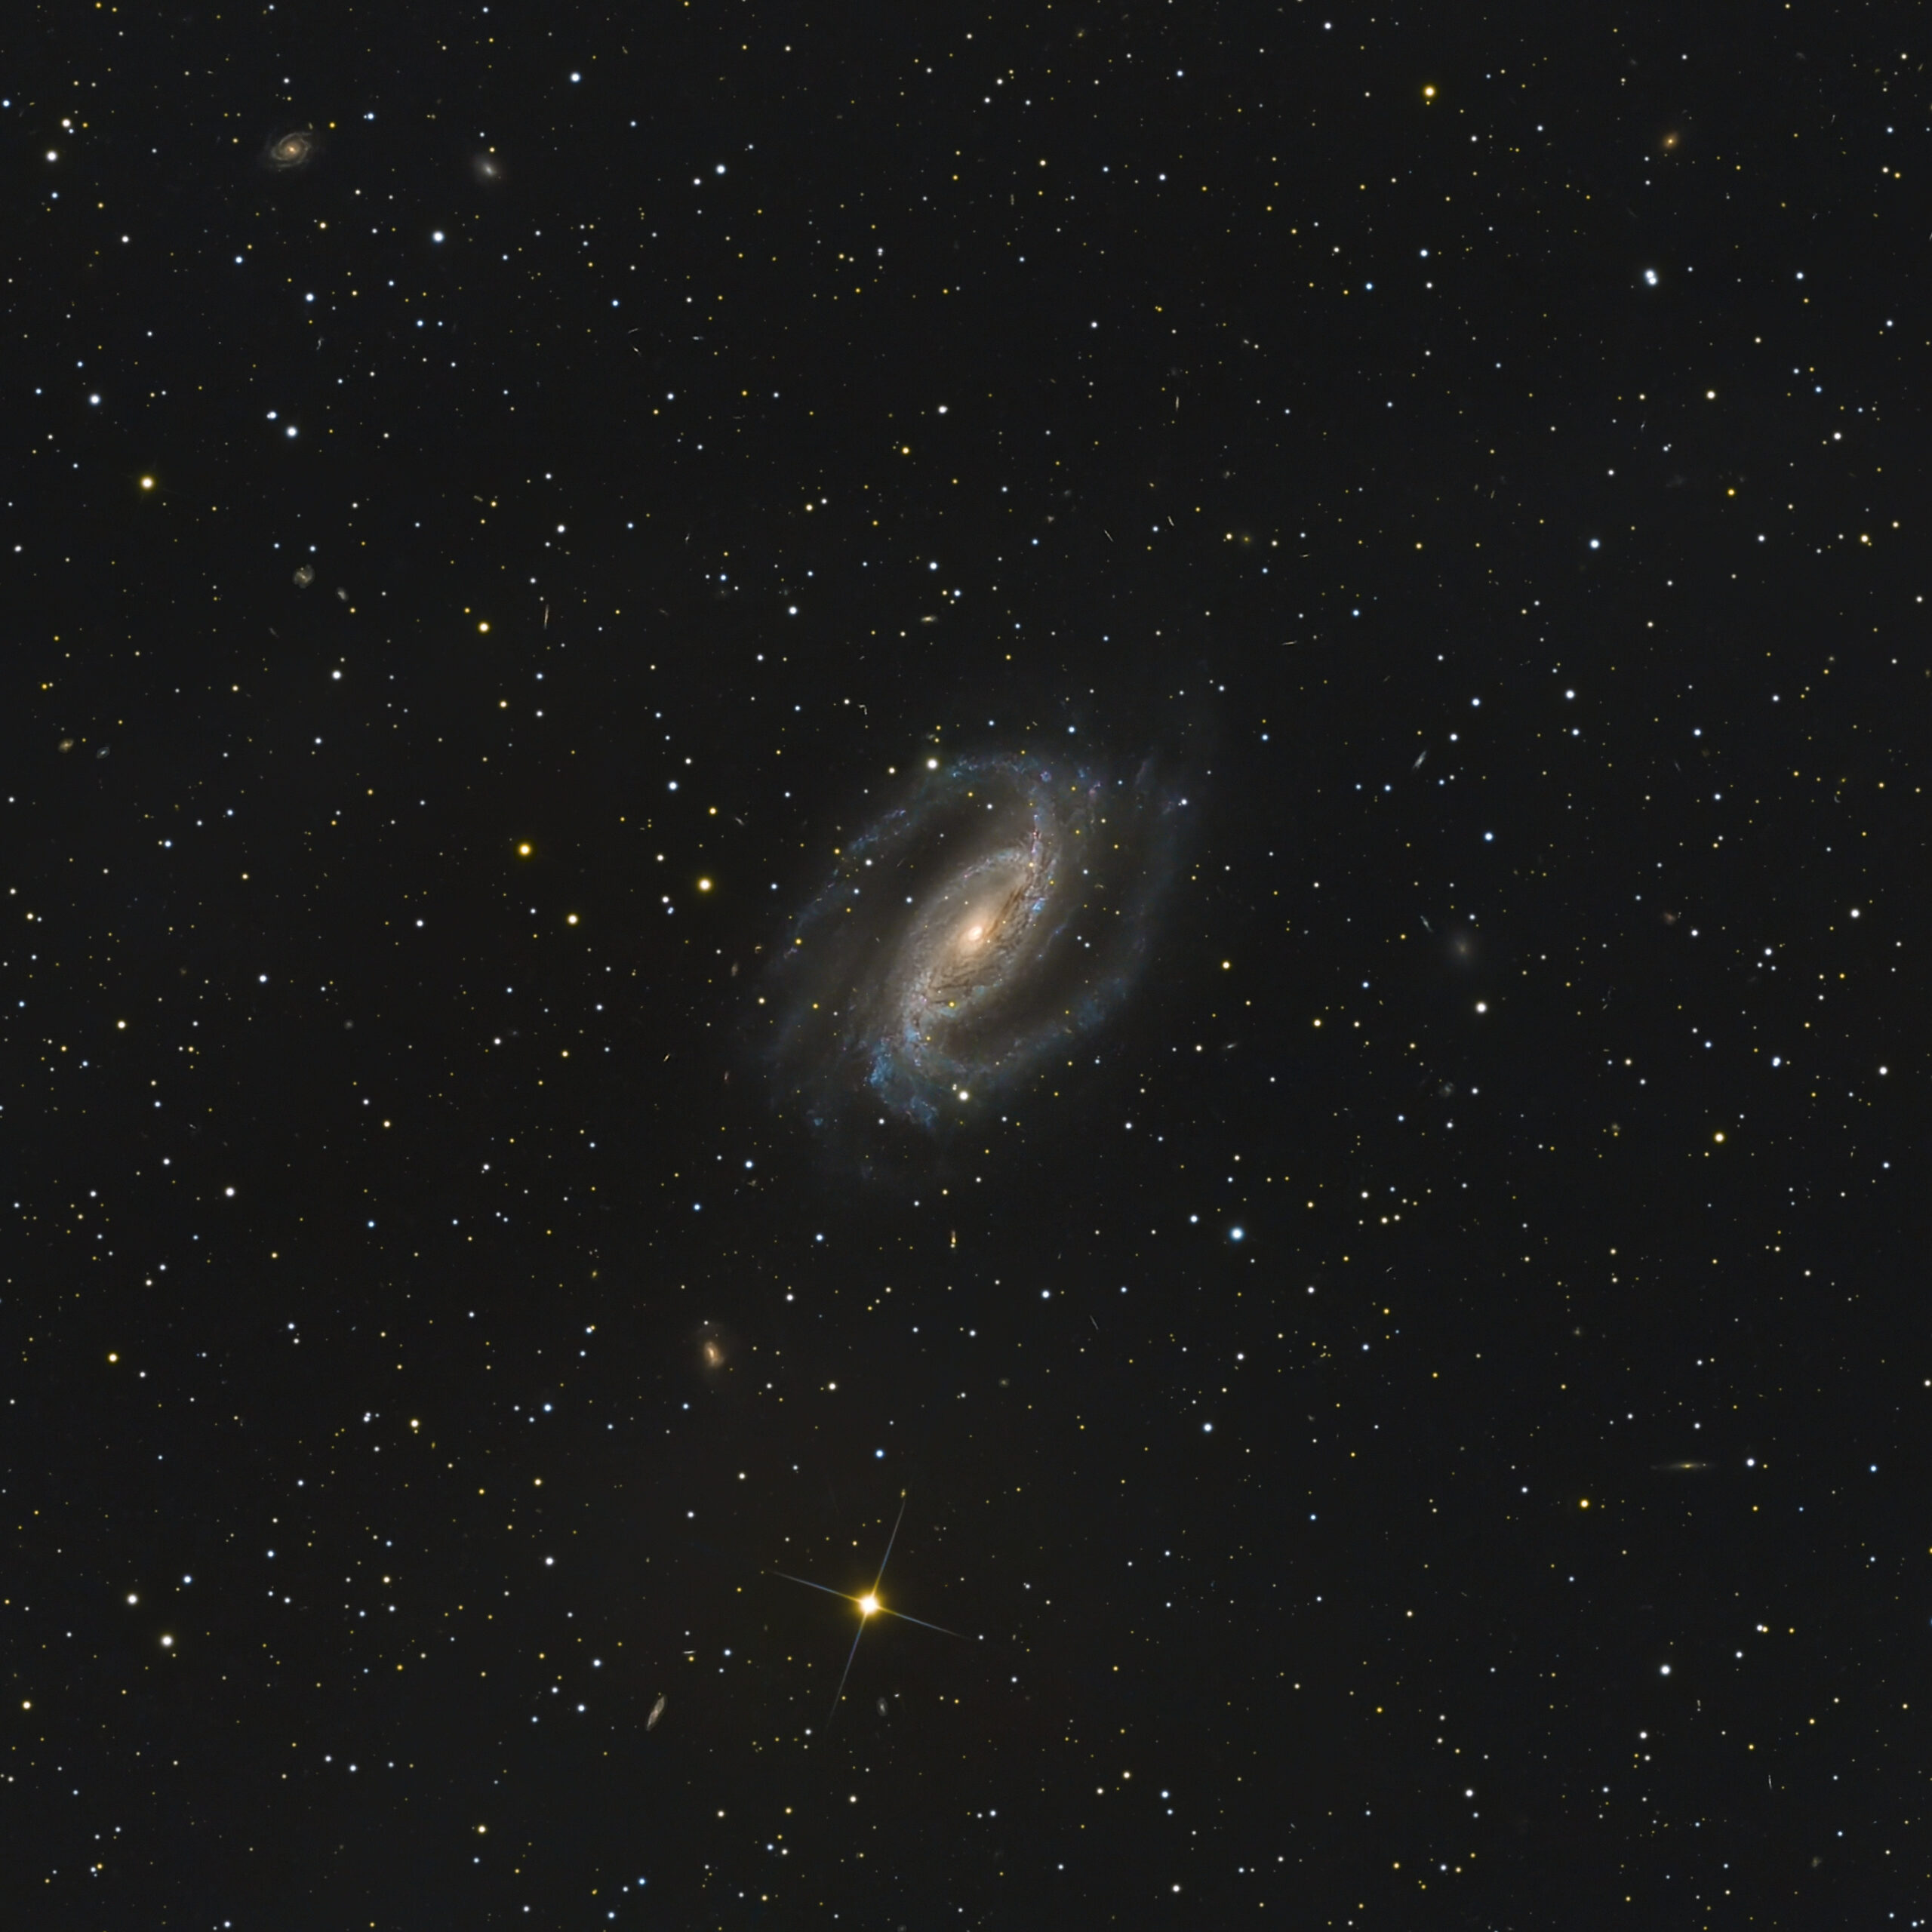 NGC 2263